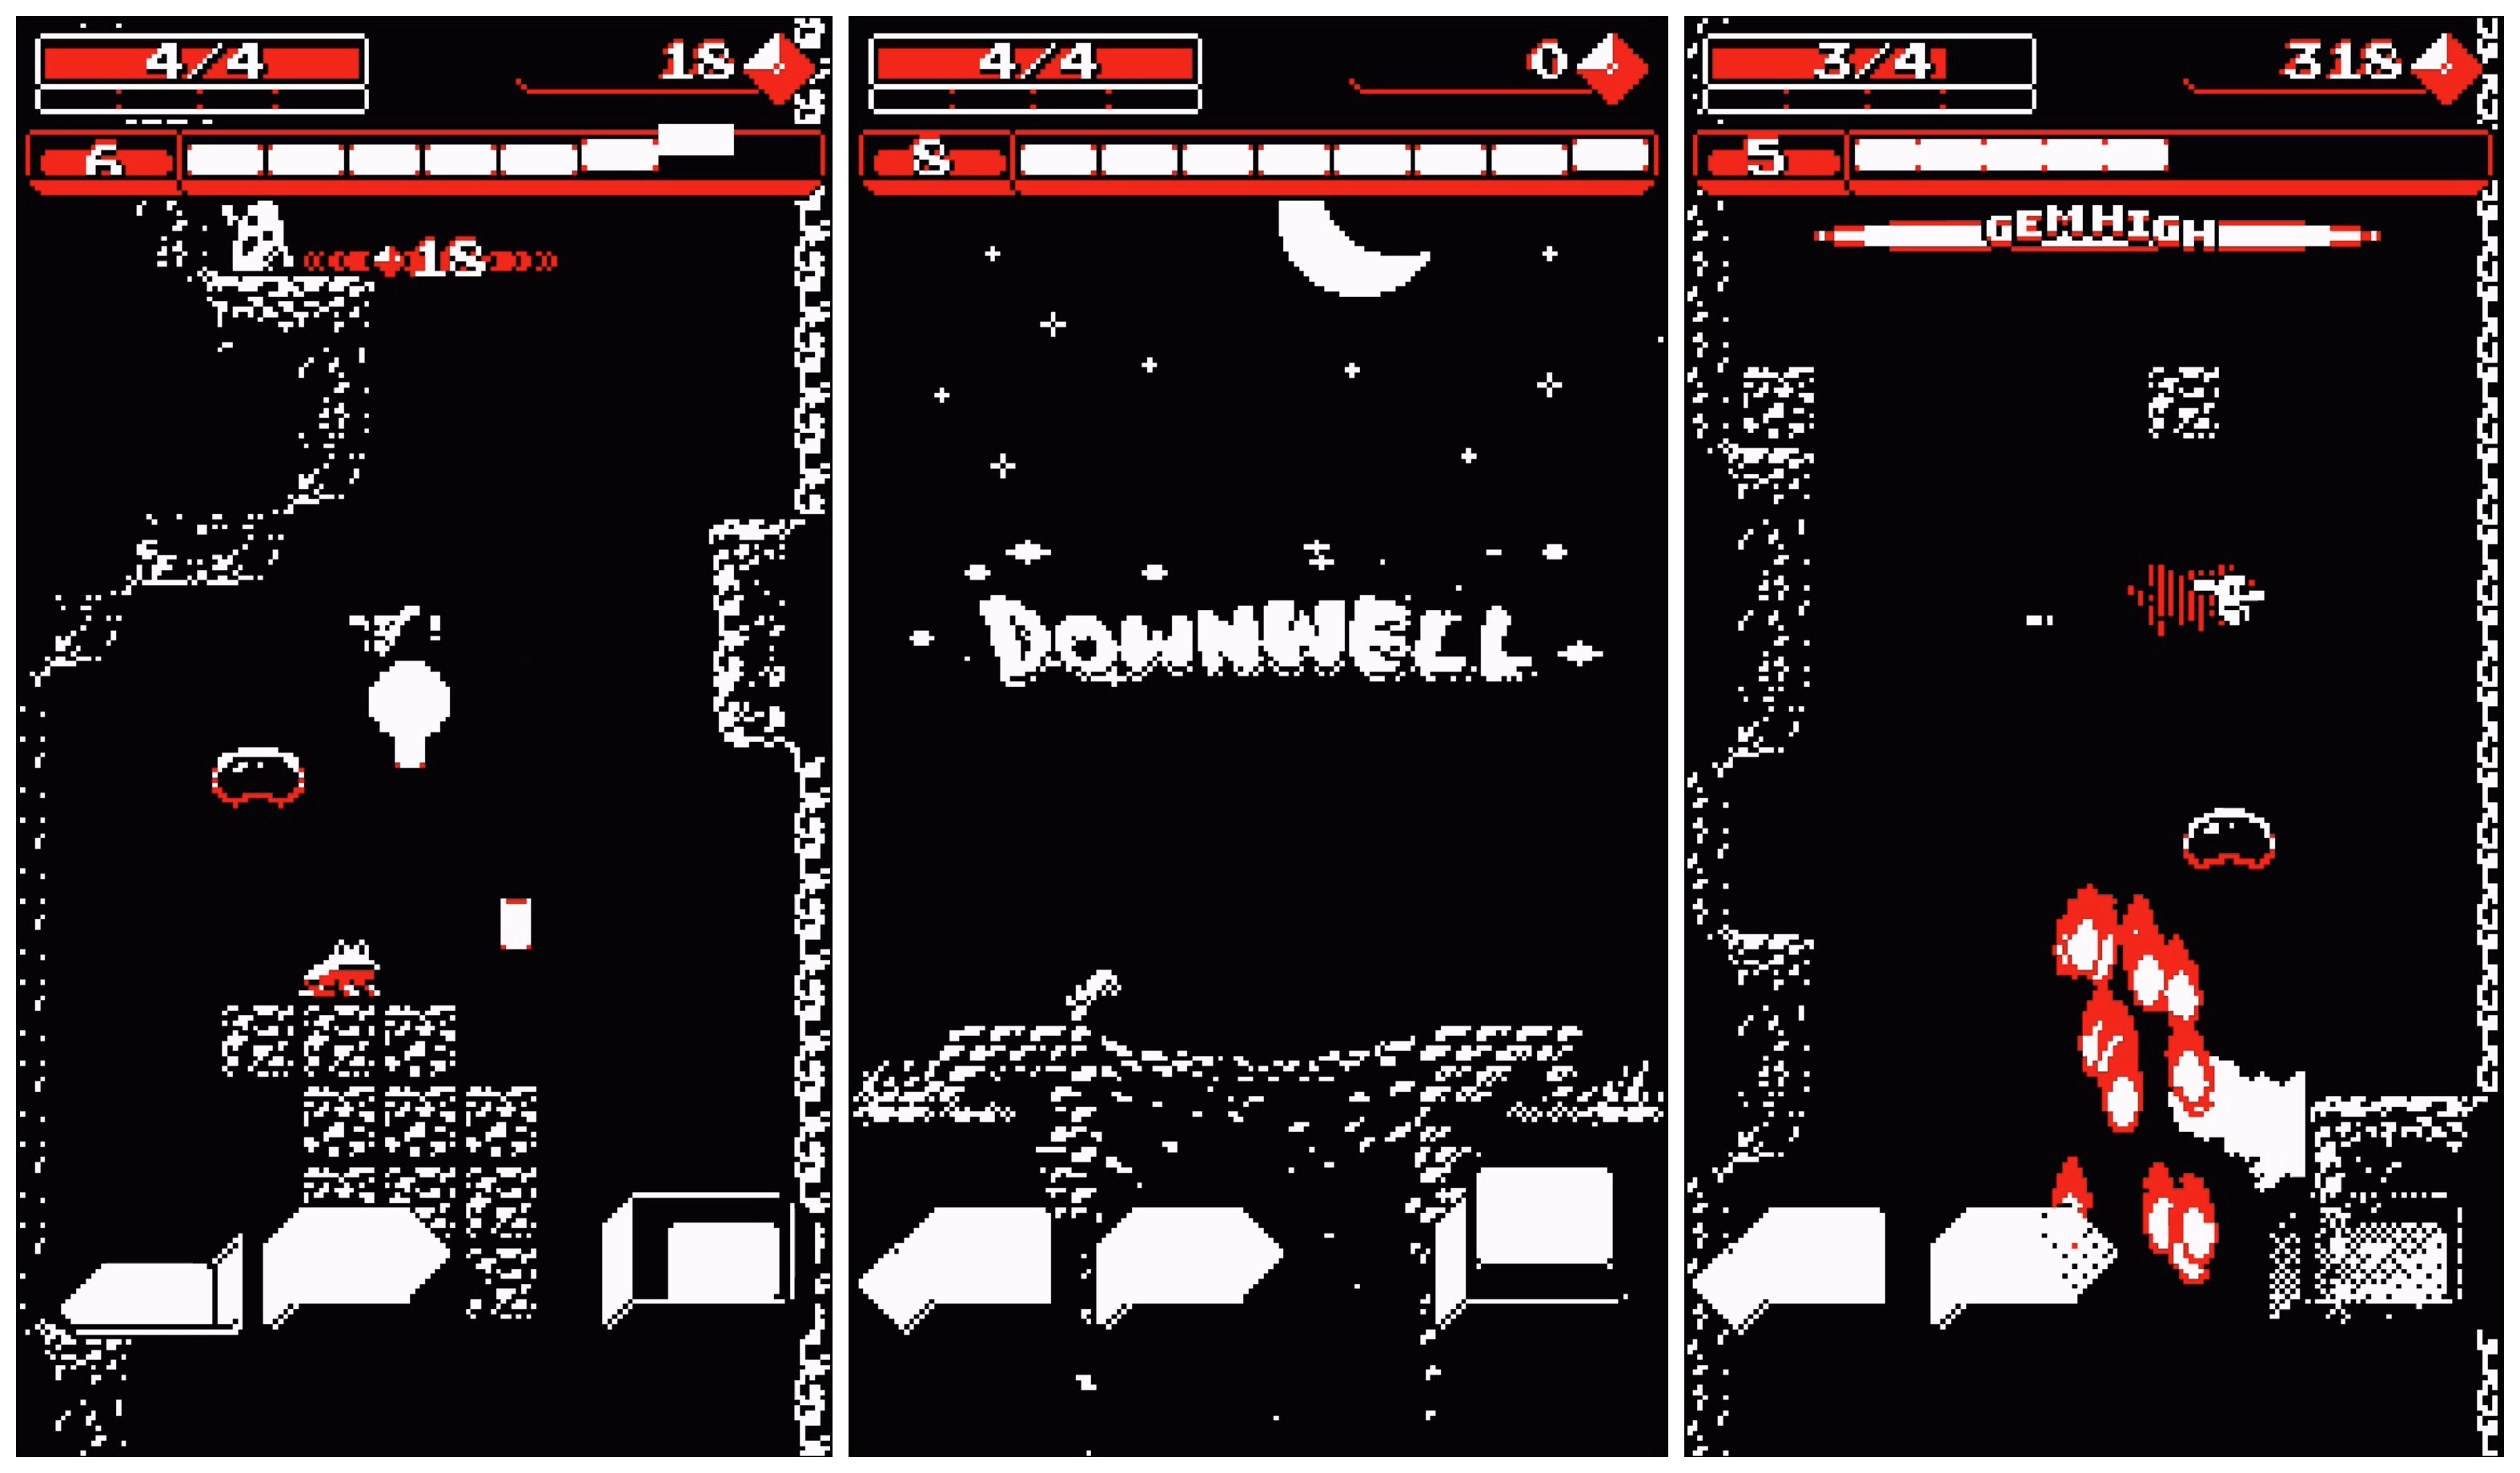 roguelike video games - Downwell video game screenshot